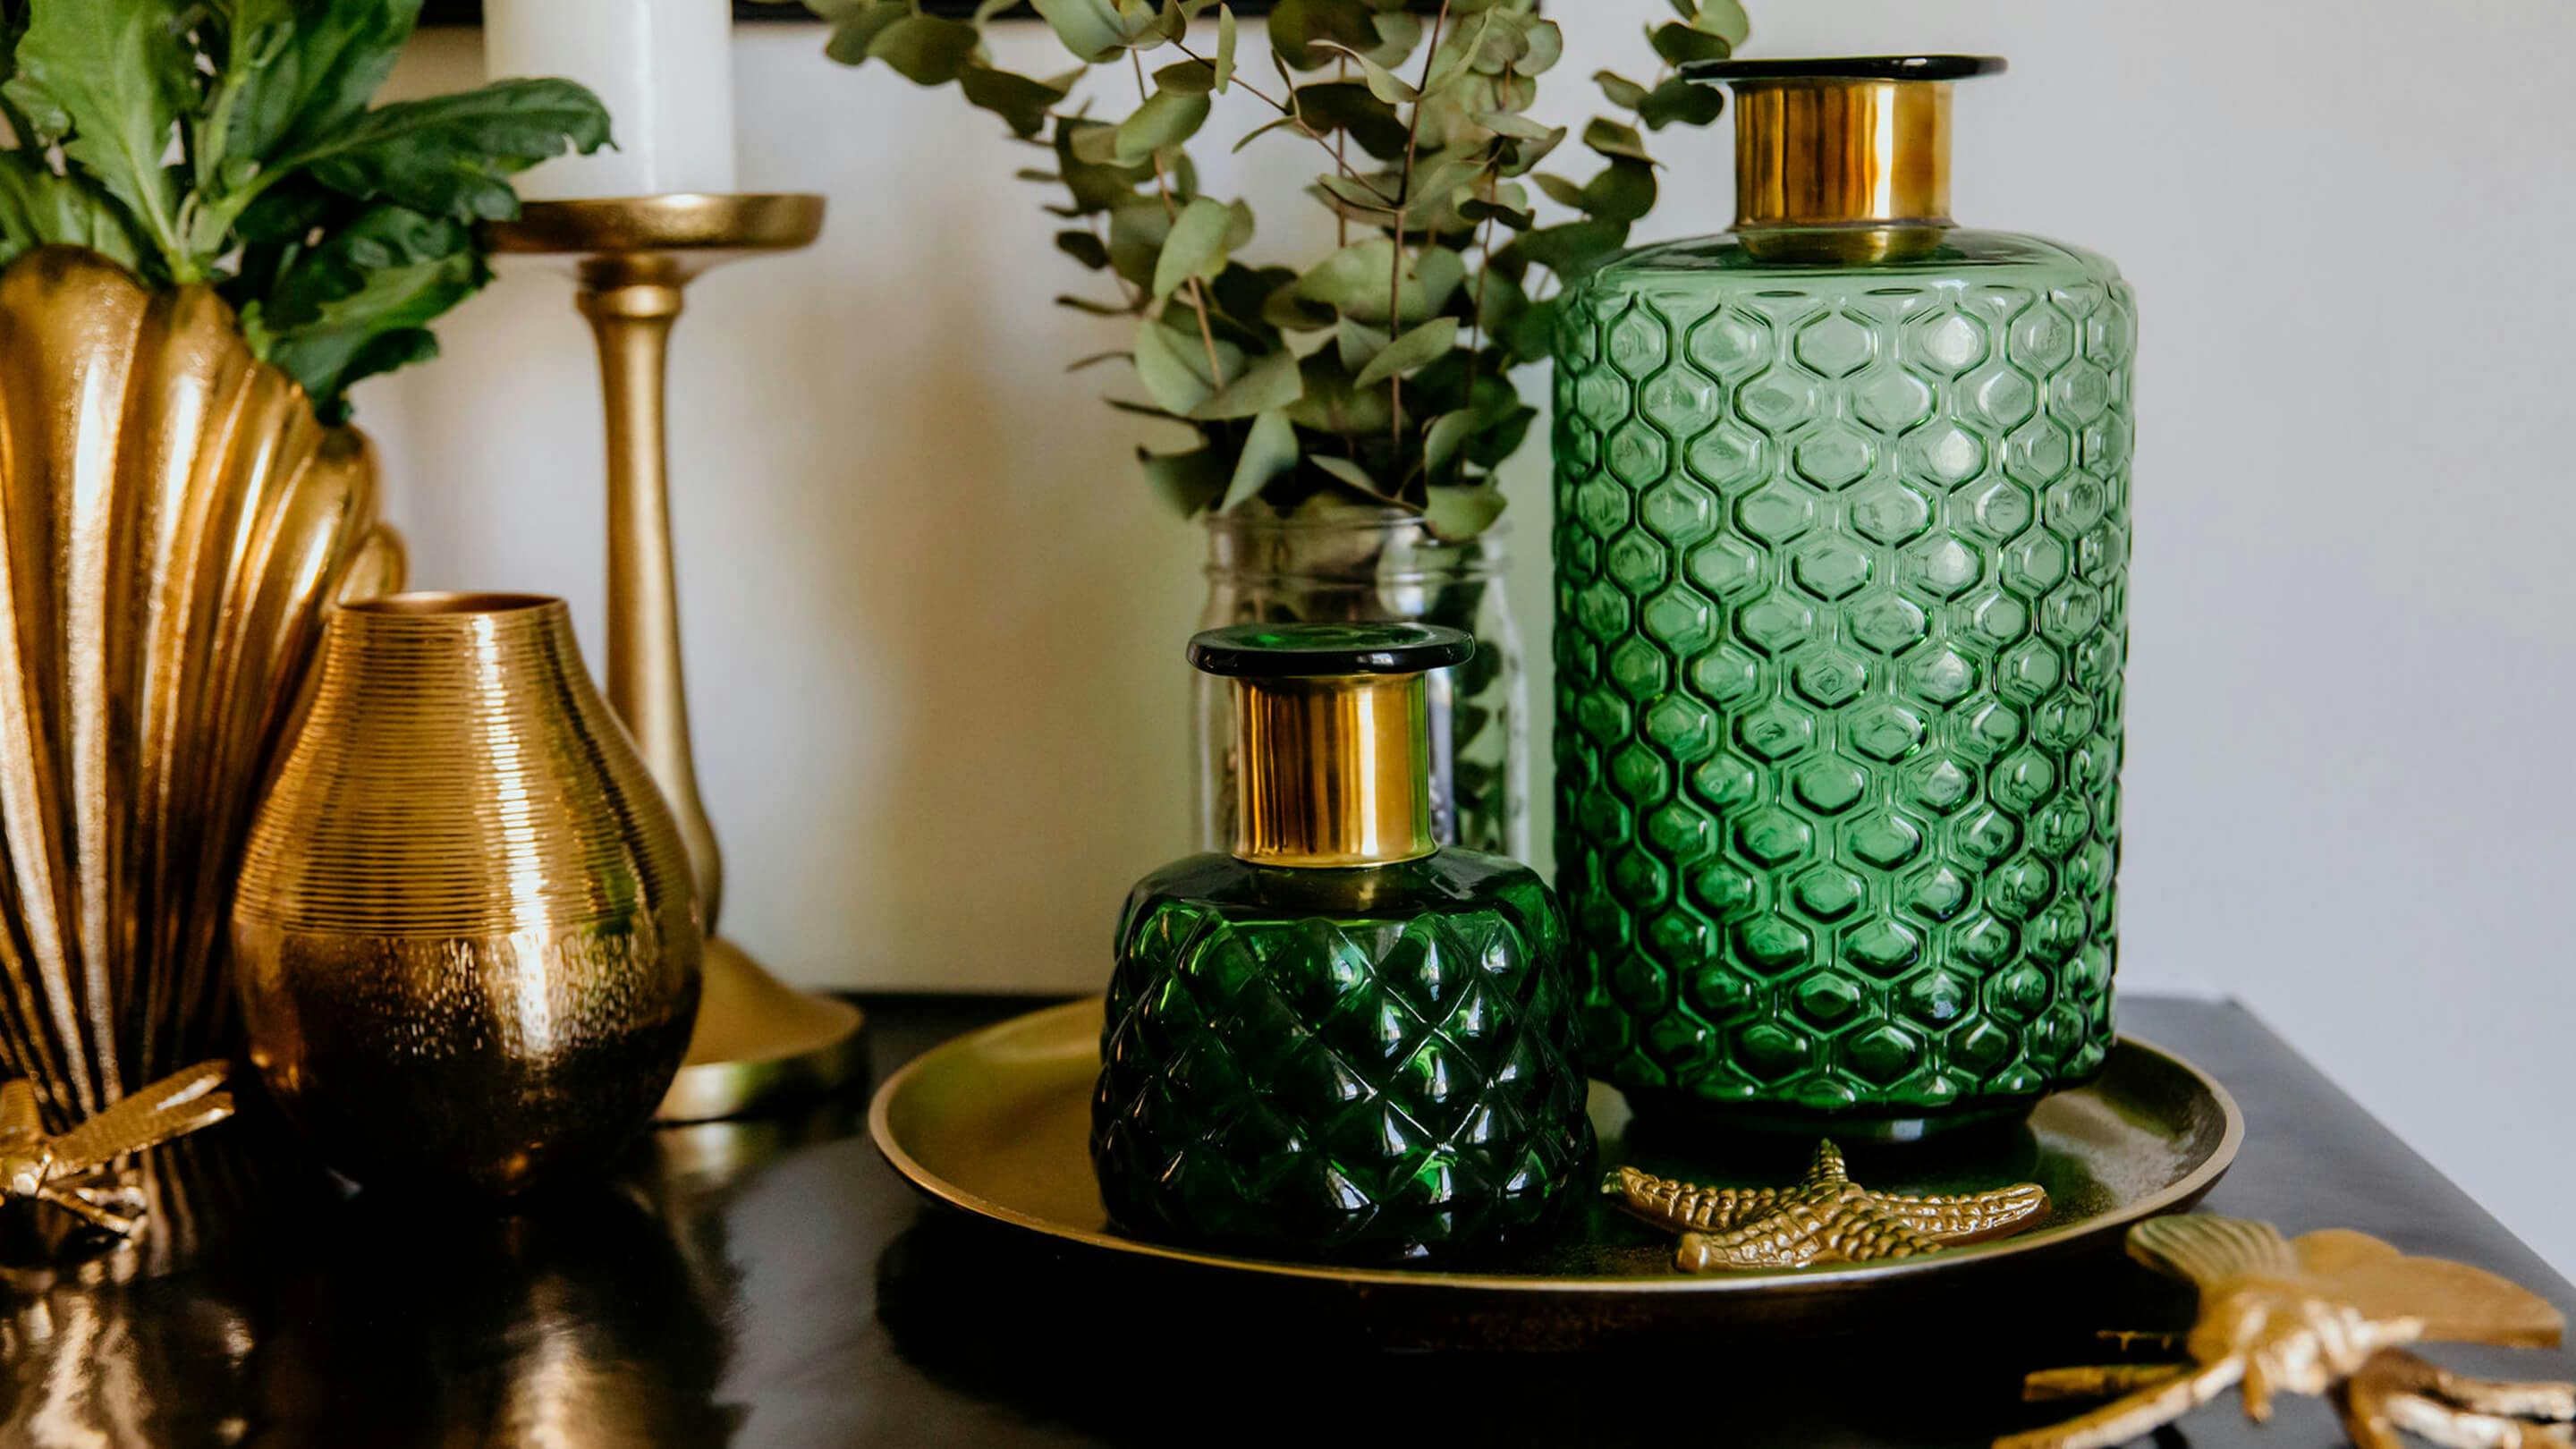 Grün und Gold passen gut zusammen (Marke der Vasen und Deko-Accessoires: Butlers).